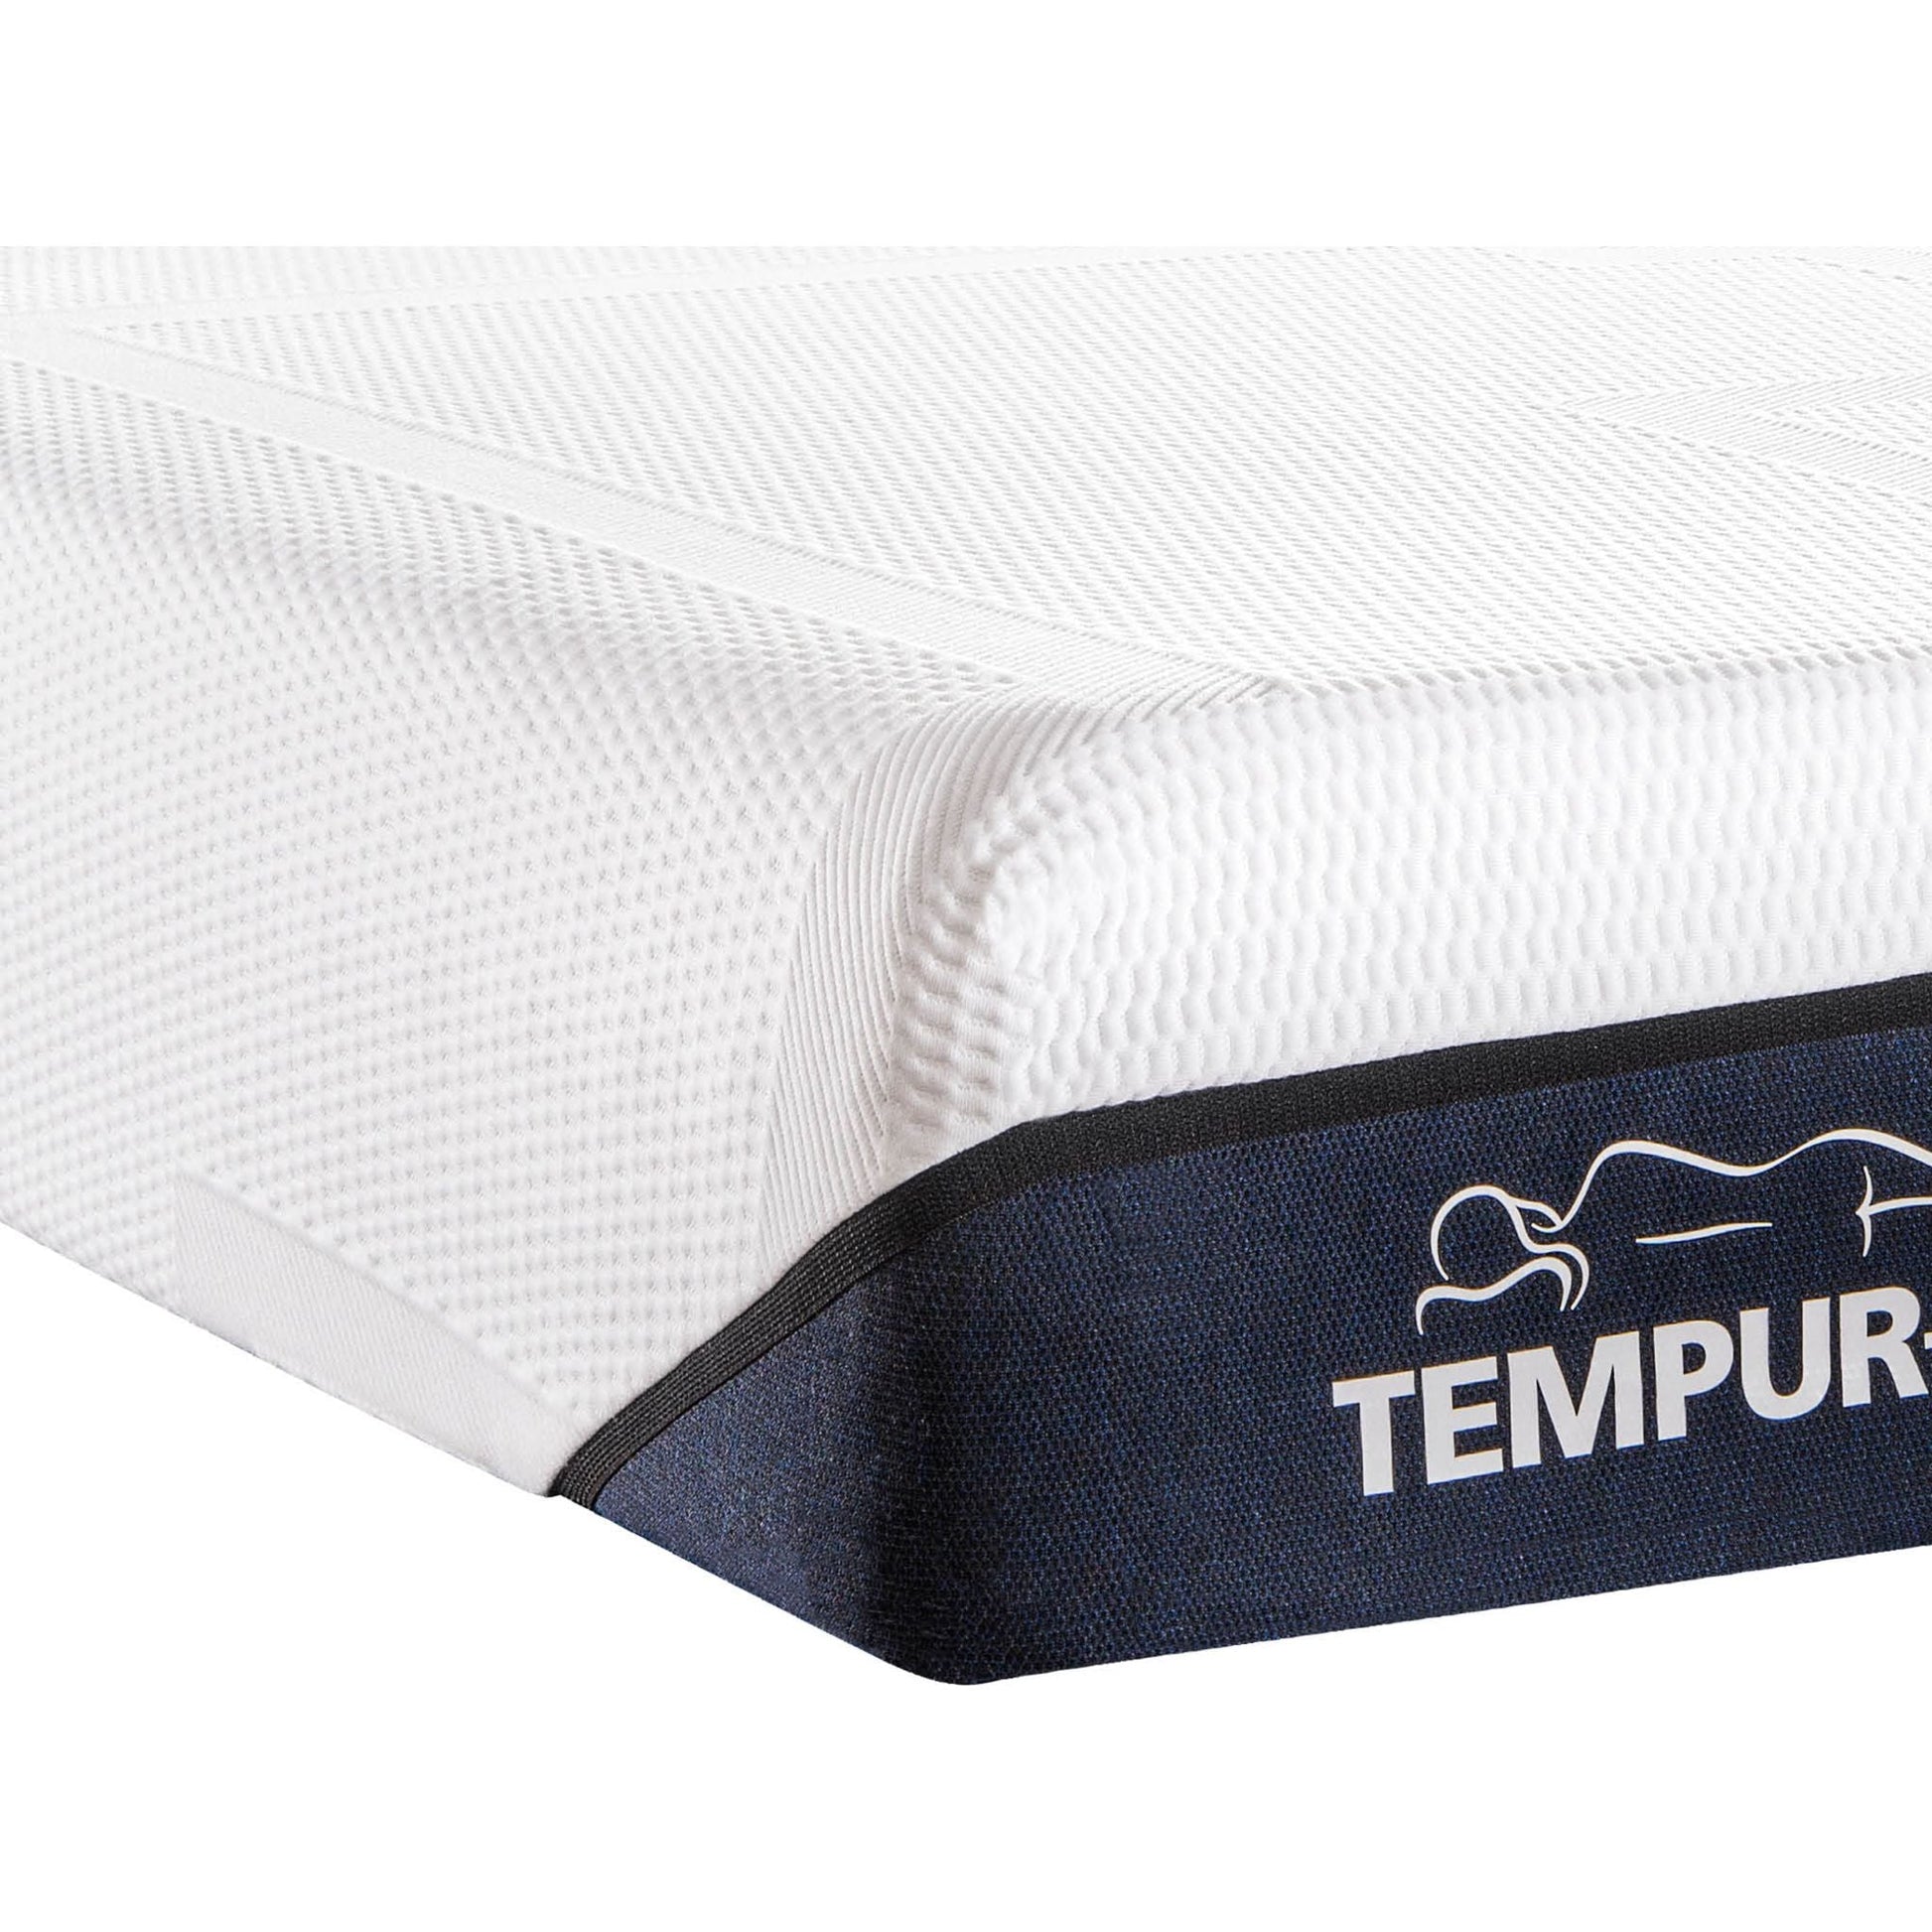 Tempur-Pedic Tempur-Sense Medium Hybrid 11 inch Mattress